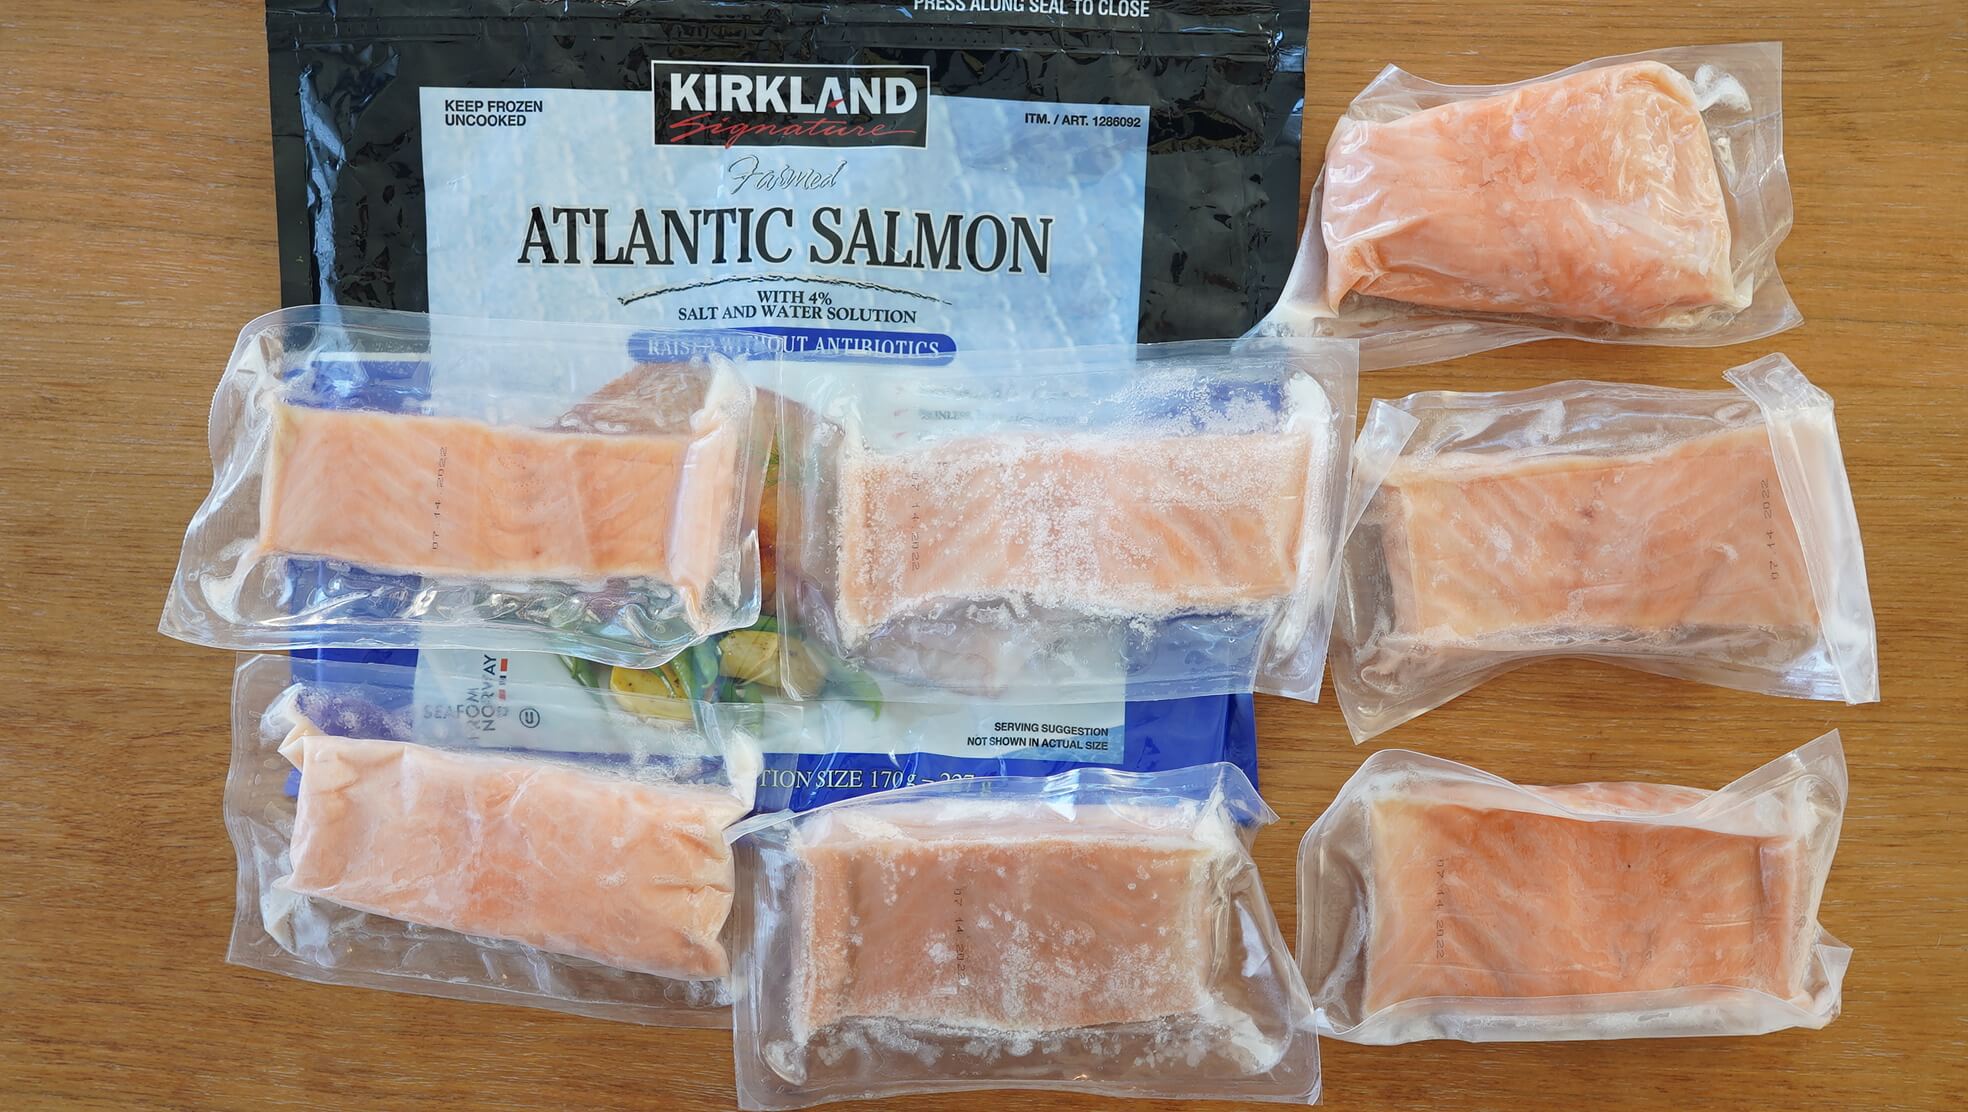 コストコのおすすめ冷凍食品「カークランド アトランティックサーモン」のパッケージ写真